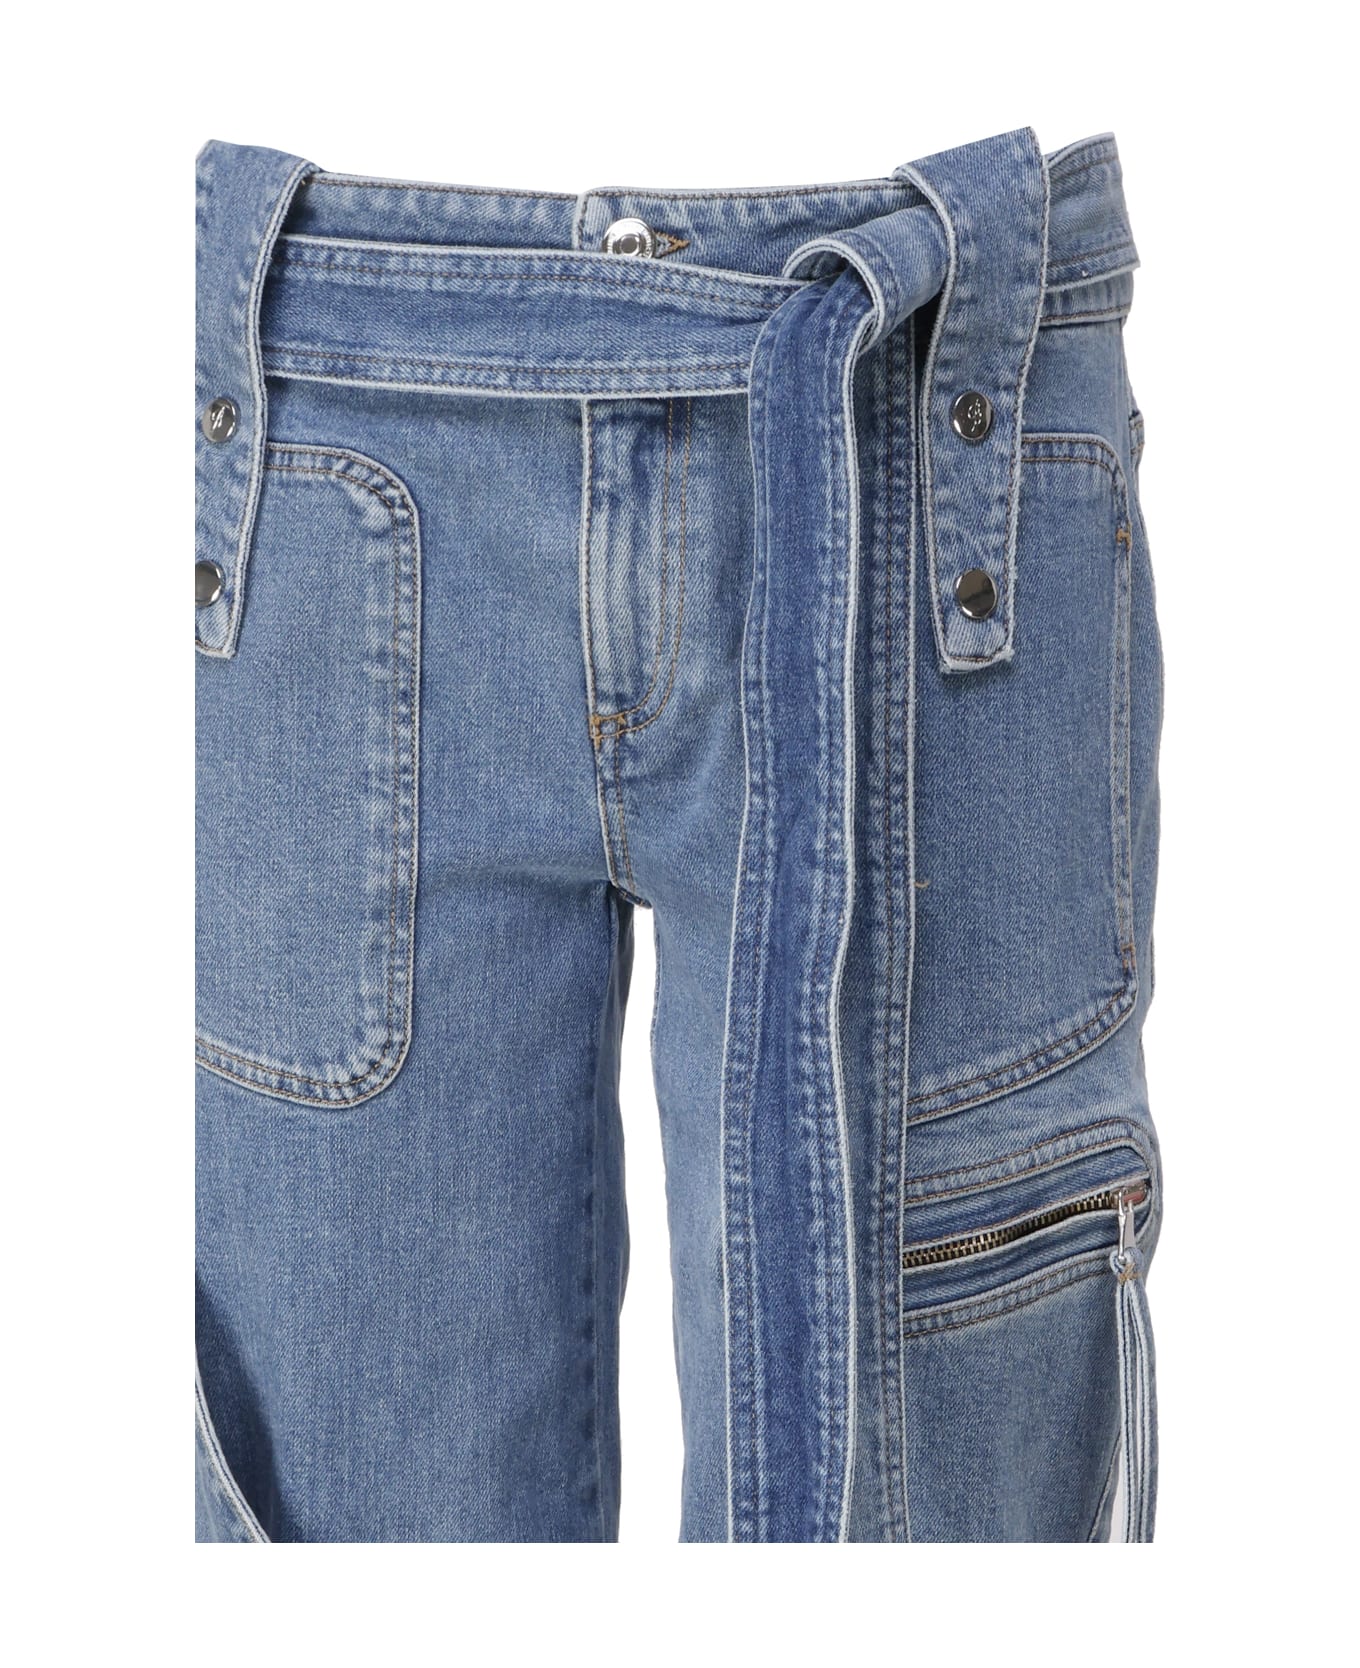 Blumarine Cargo Jeasn With Belt - Medium wash jeans